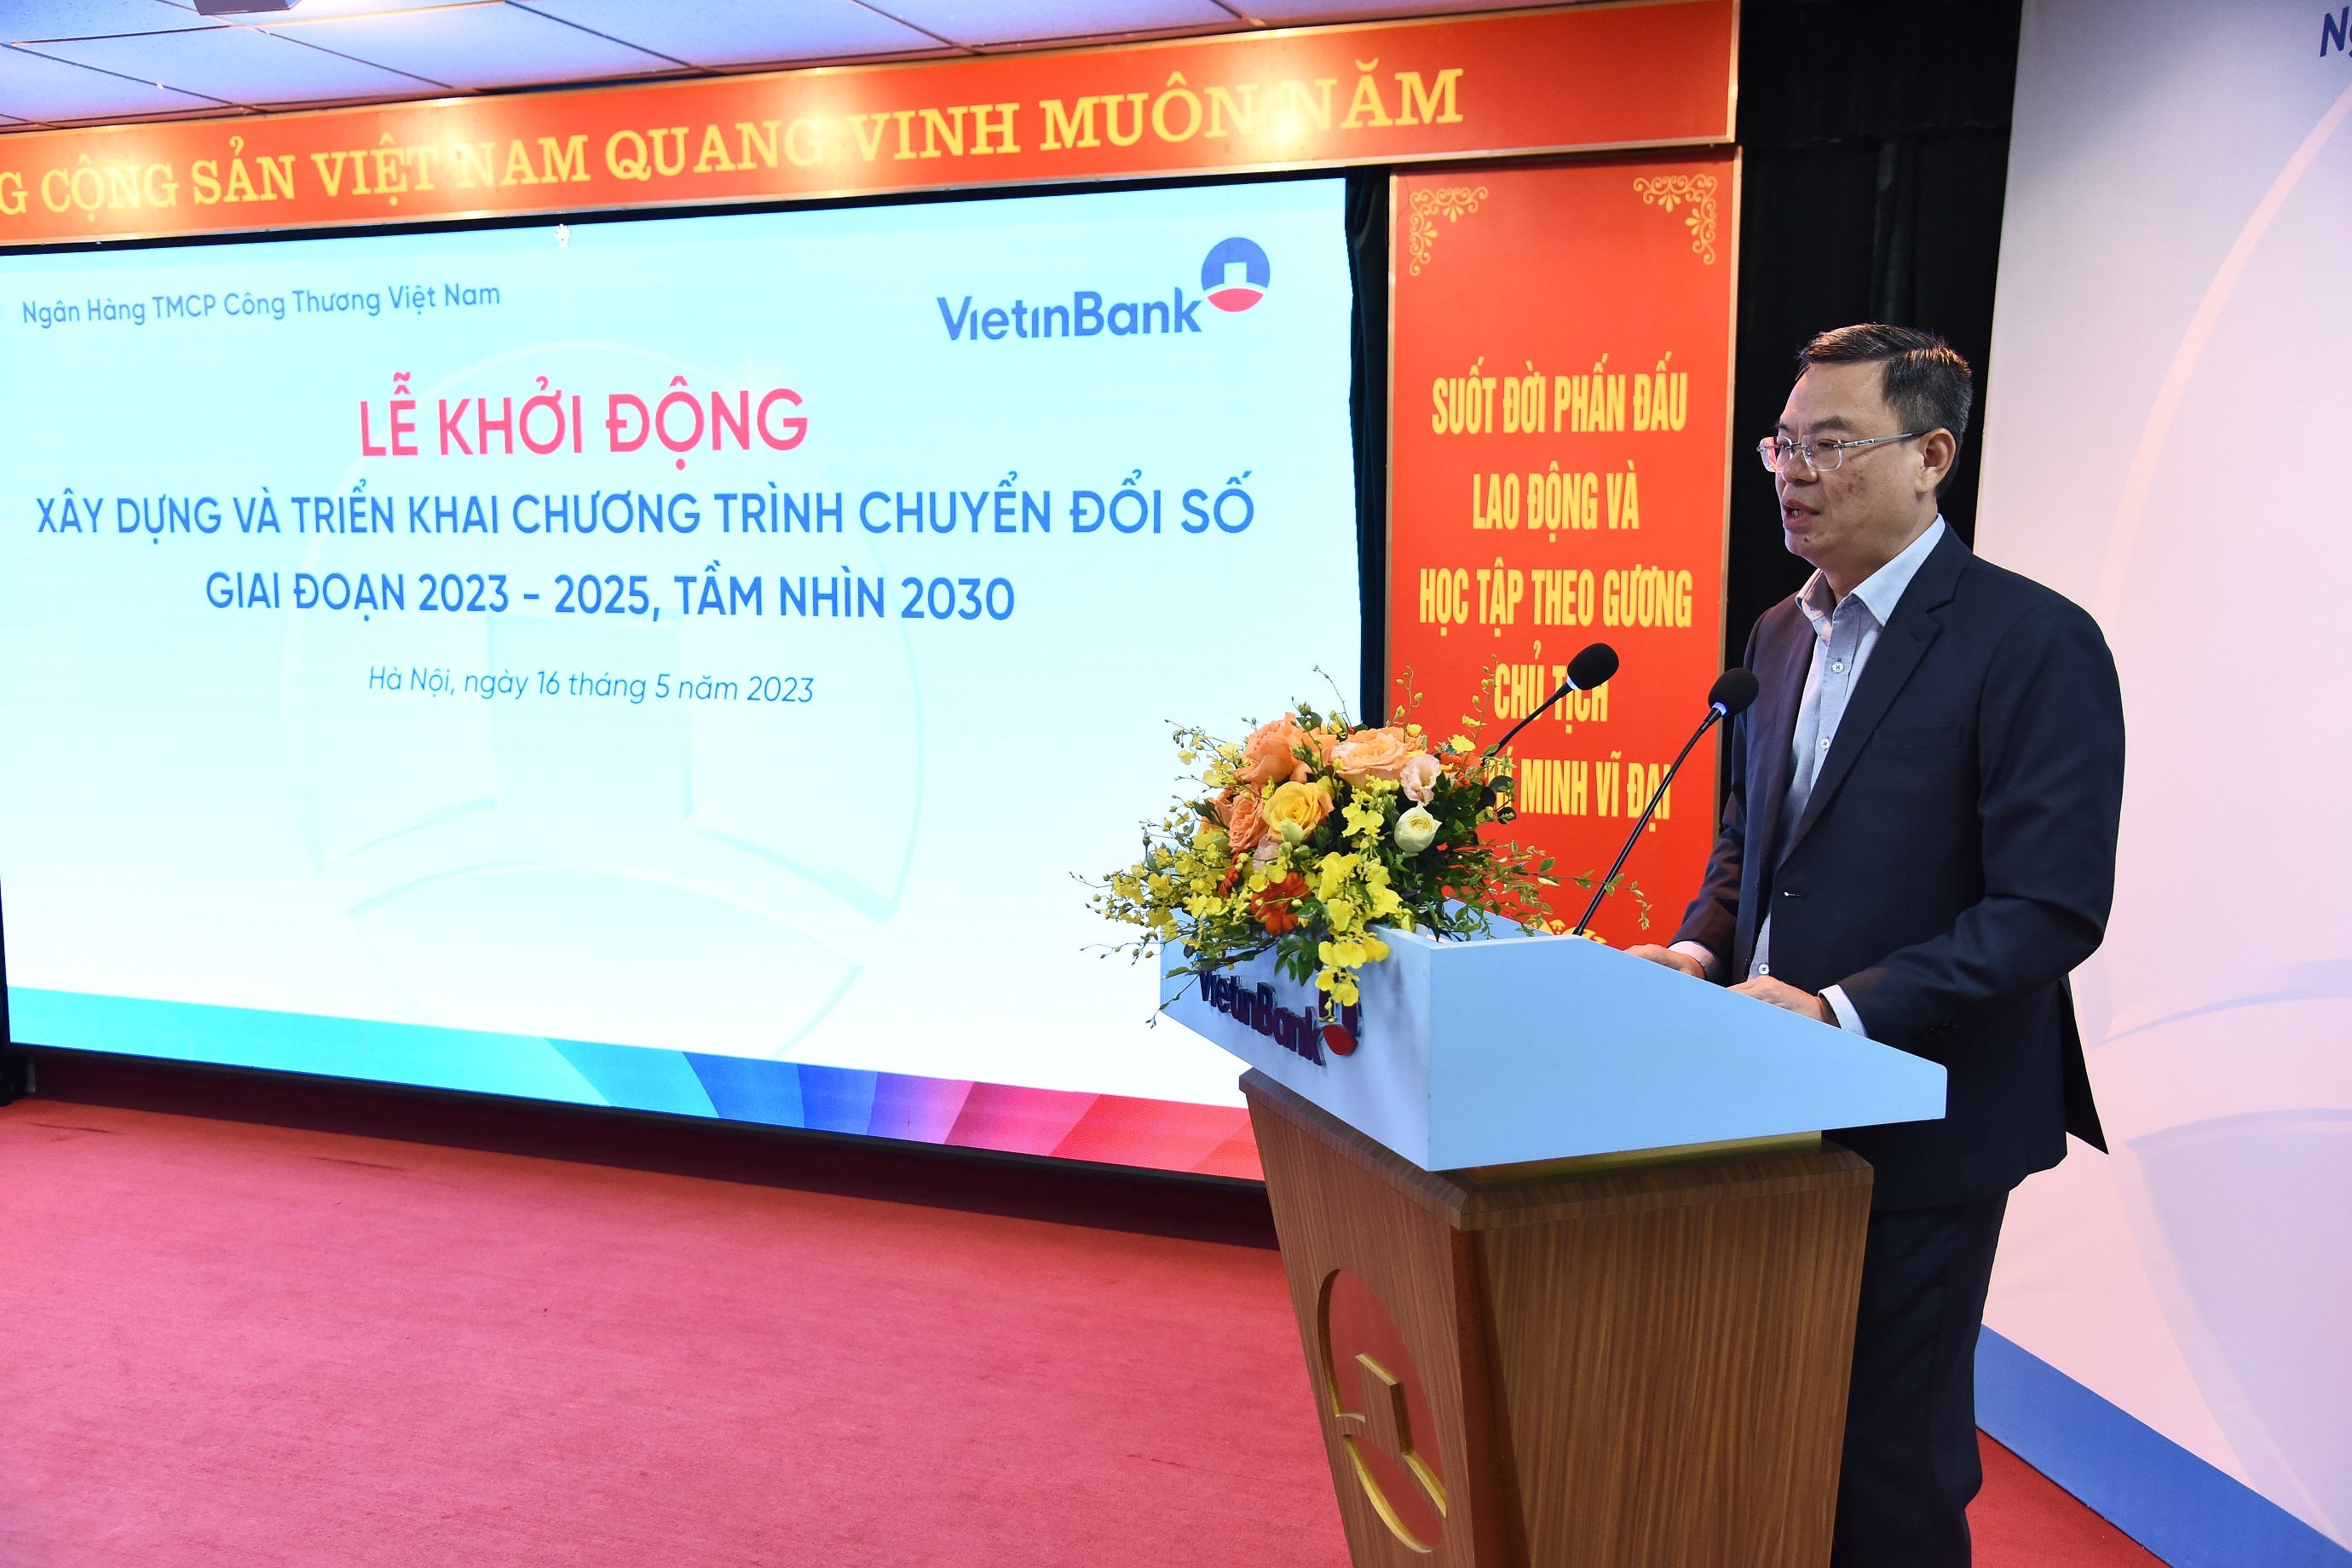 Ông Trần Minh Bình - Chủ tịch HĐQT VietinBank phát biểu tại Lễ Khởi động xây dựng và triển khai chương trình Chuyển đổi số tại VietinBank giai đoạn 2023 - 2025, tầm nhìn 2030